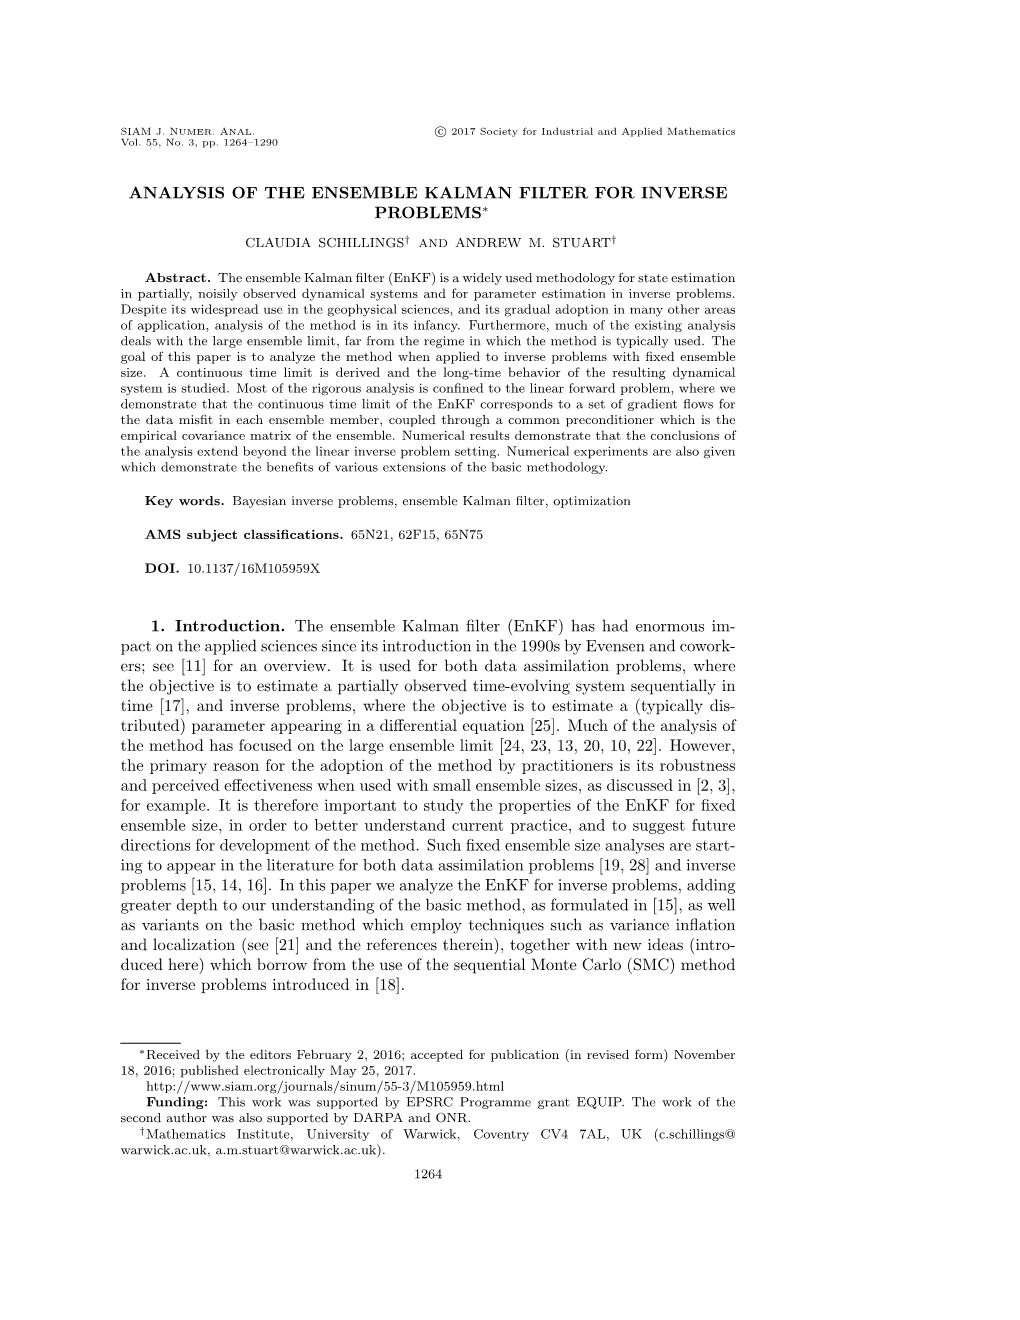 Analysis of the Ensemble Kalman Filter for Inverse Problems∗